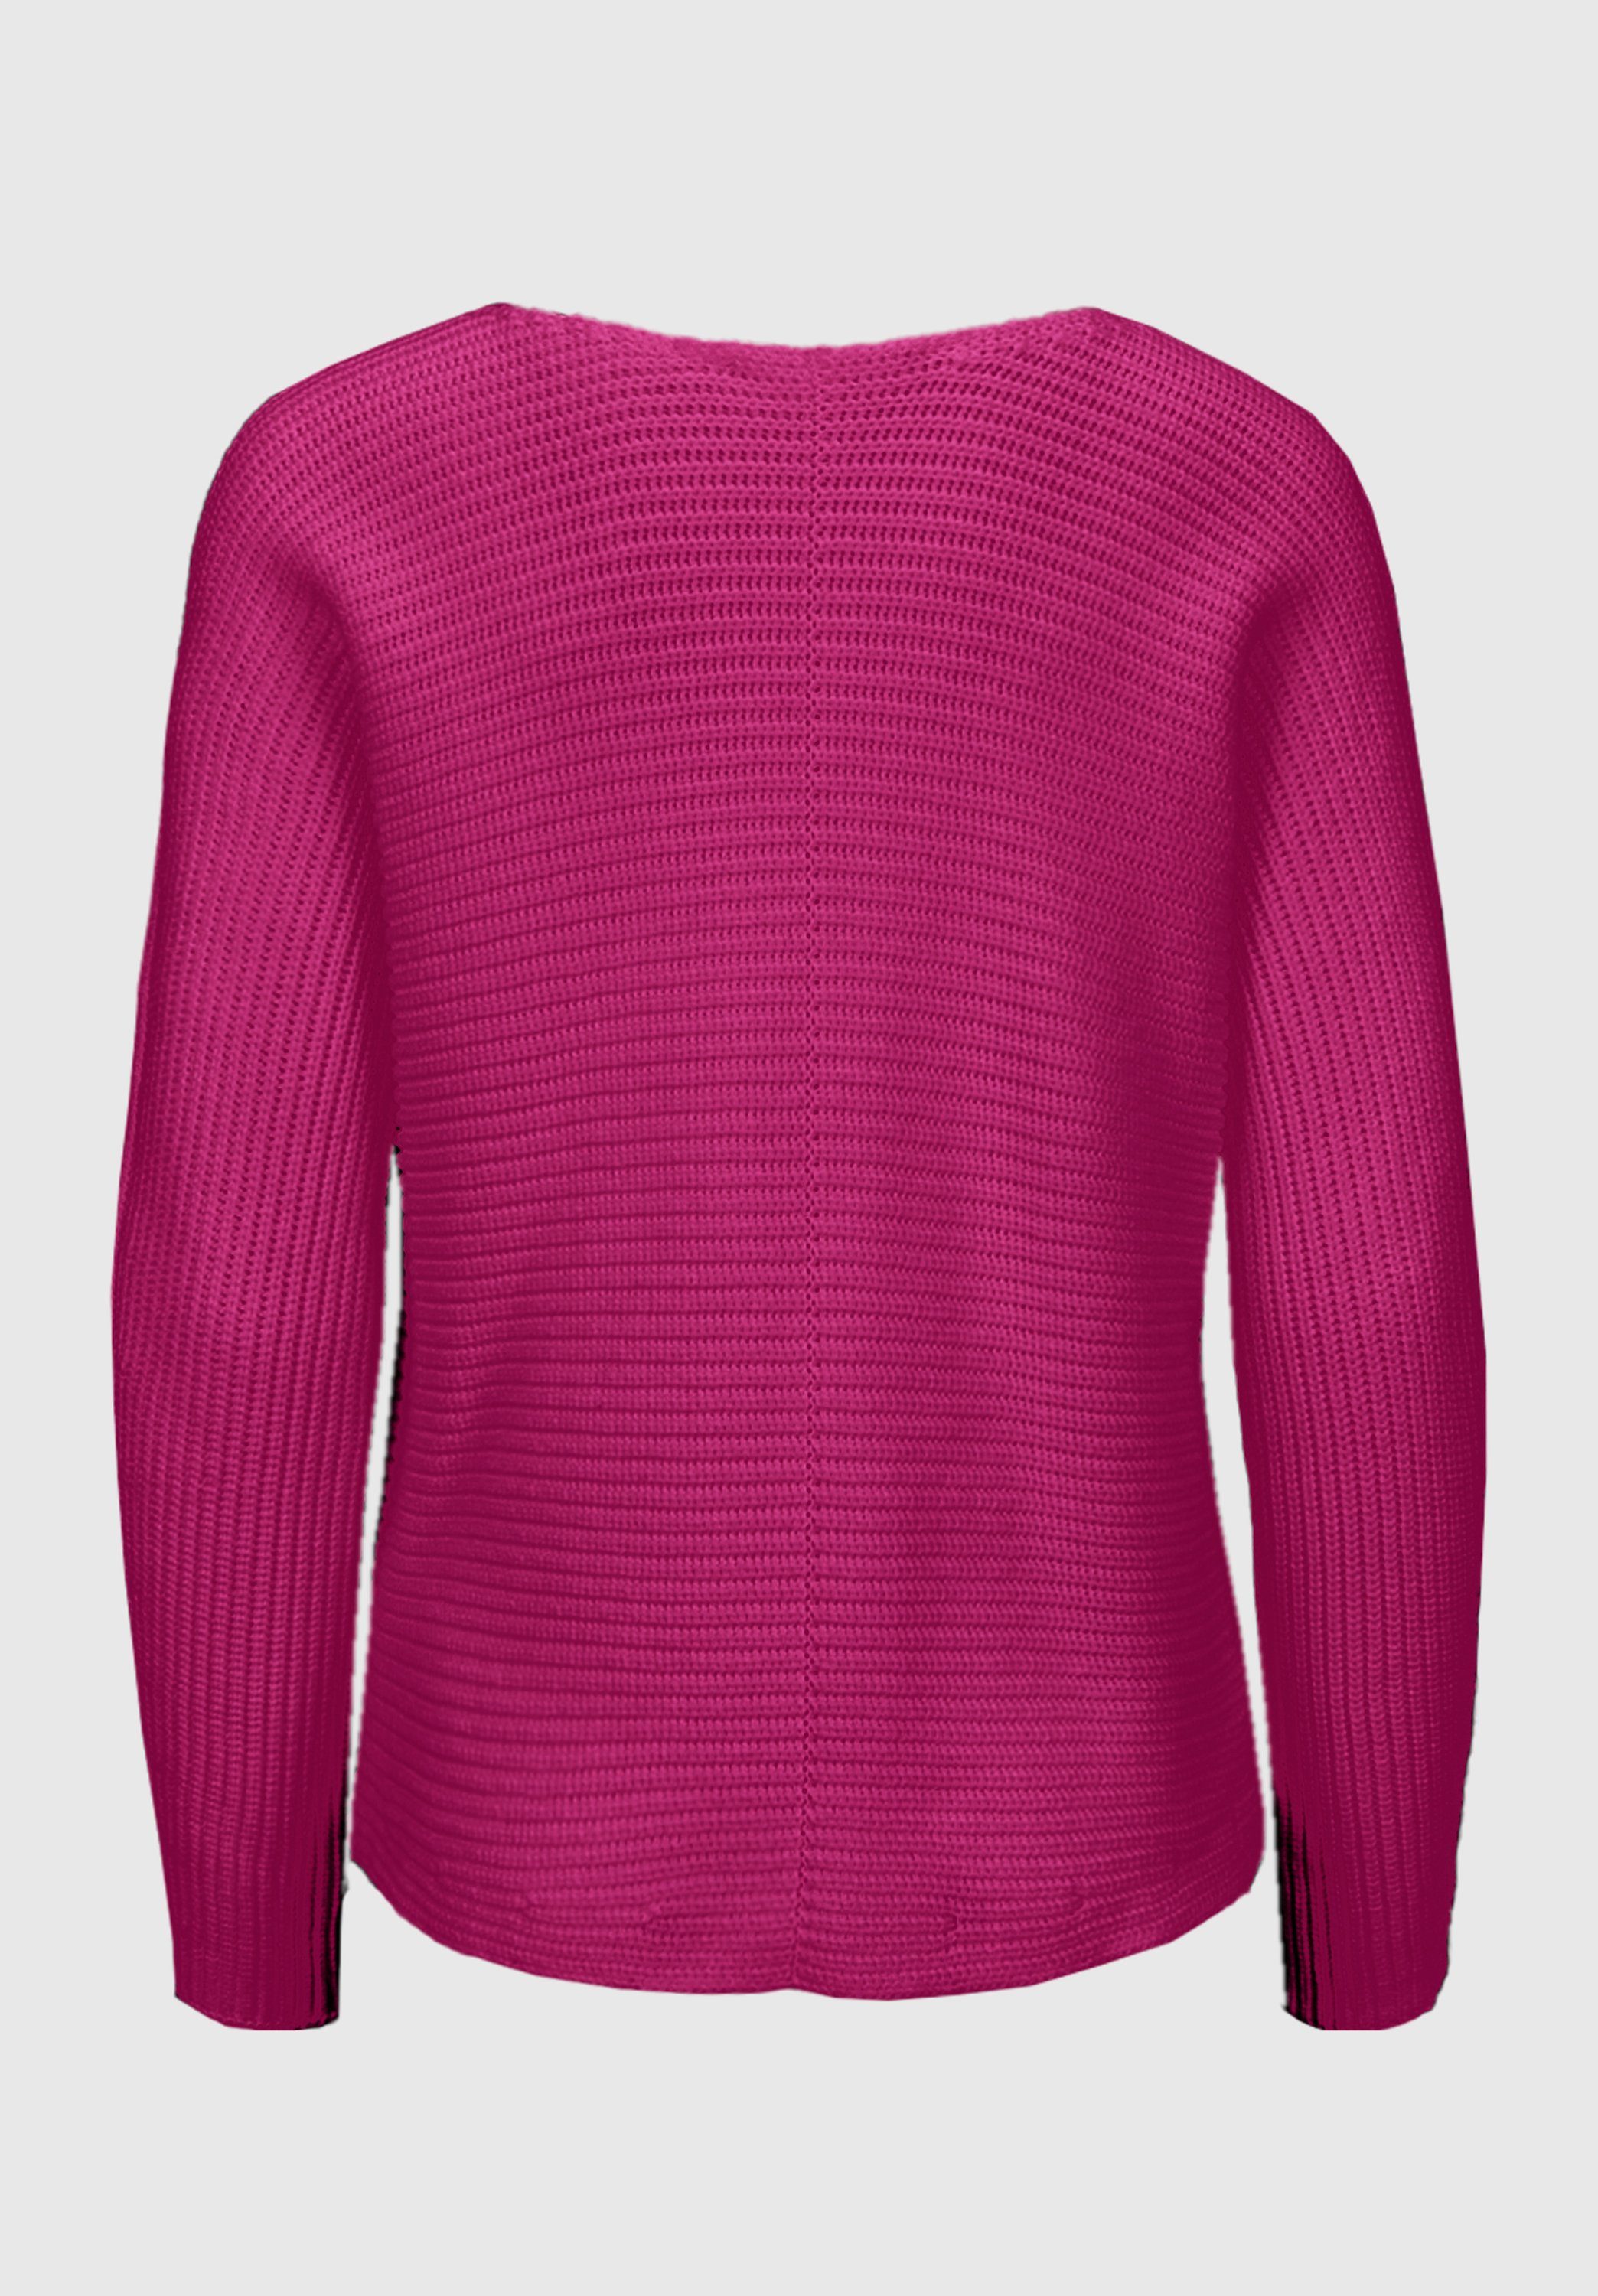 bianca Strickpullover OTIS mit angesagten Rippenstruktur Farben moderner in cool pink